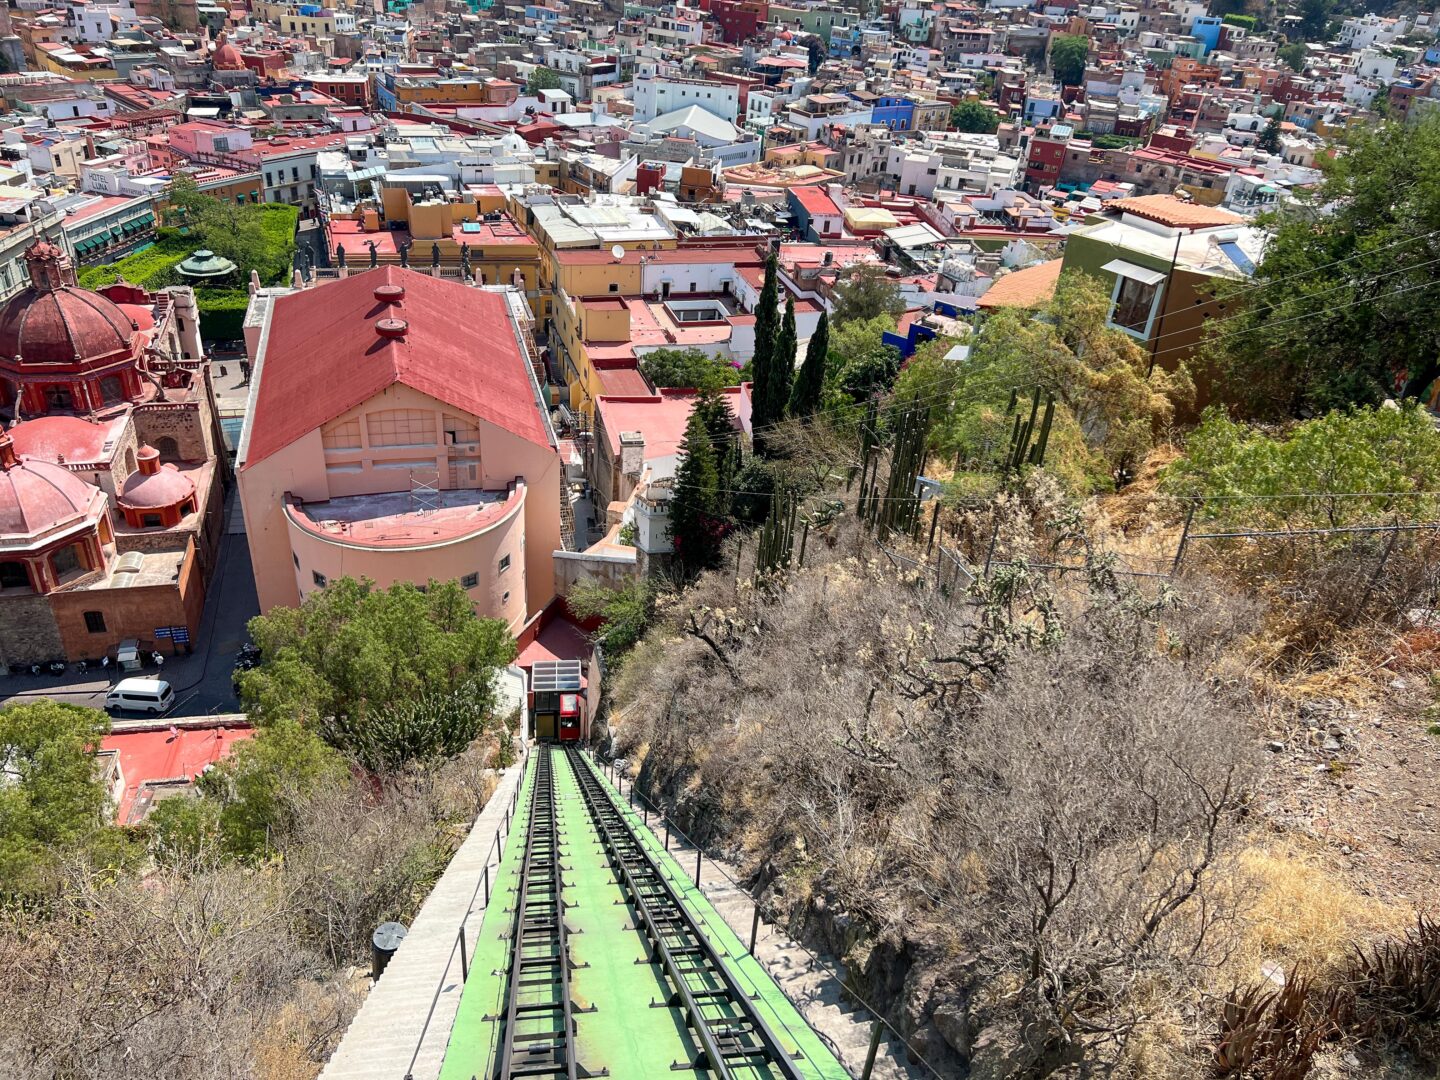 Things to do in Guanajuato Mexico
La Pipila